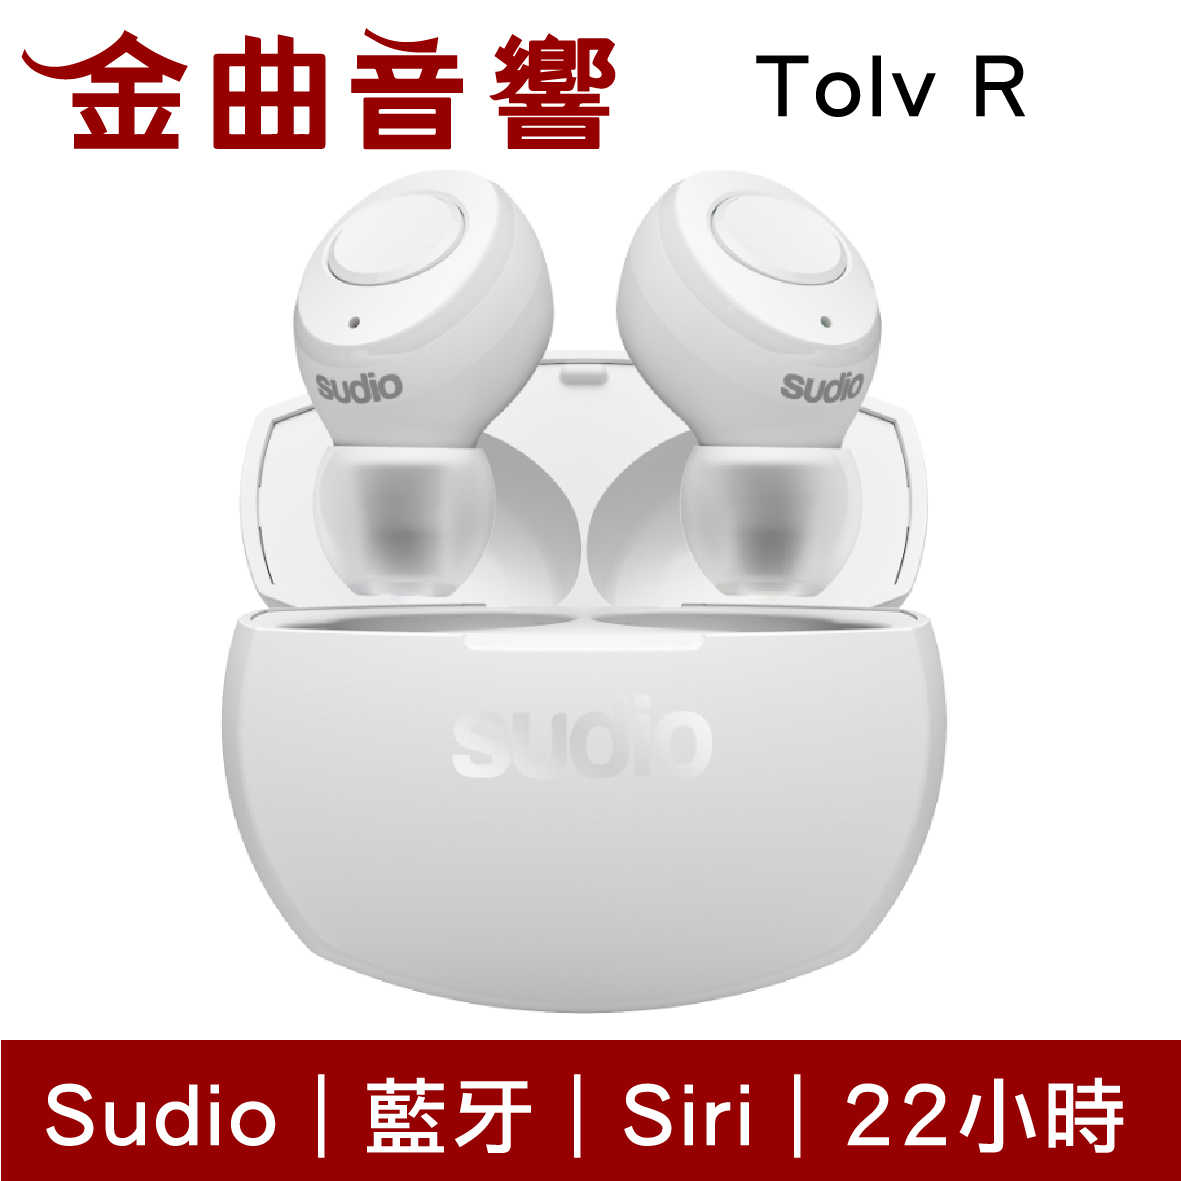 【現貨】Sudio Tolv R 白色 真無線 藍芽耳機 可通話 語音助理 TolvR | 金曲音響